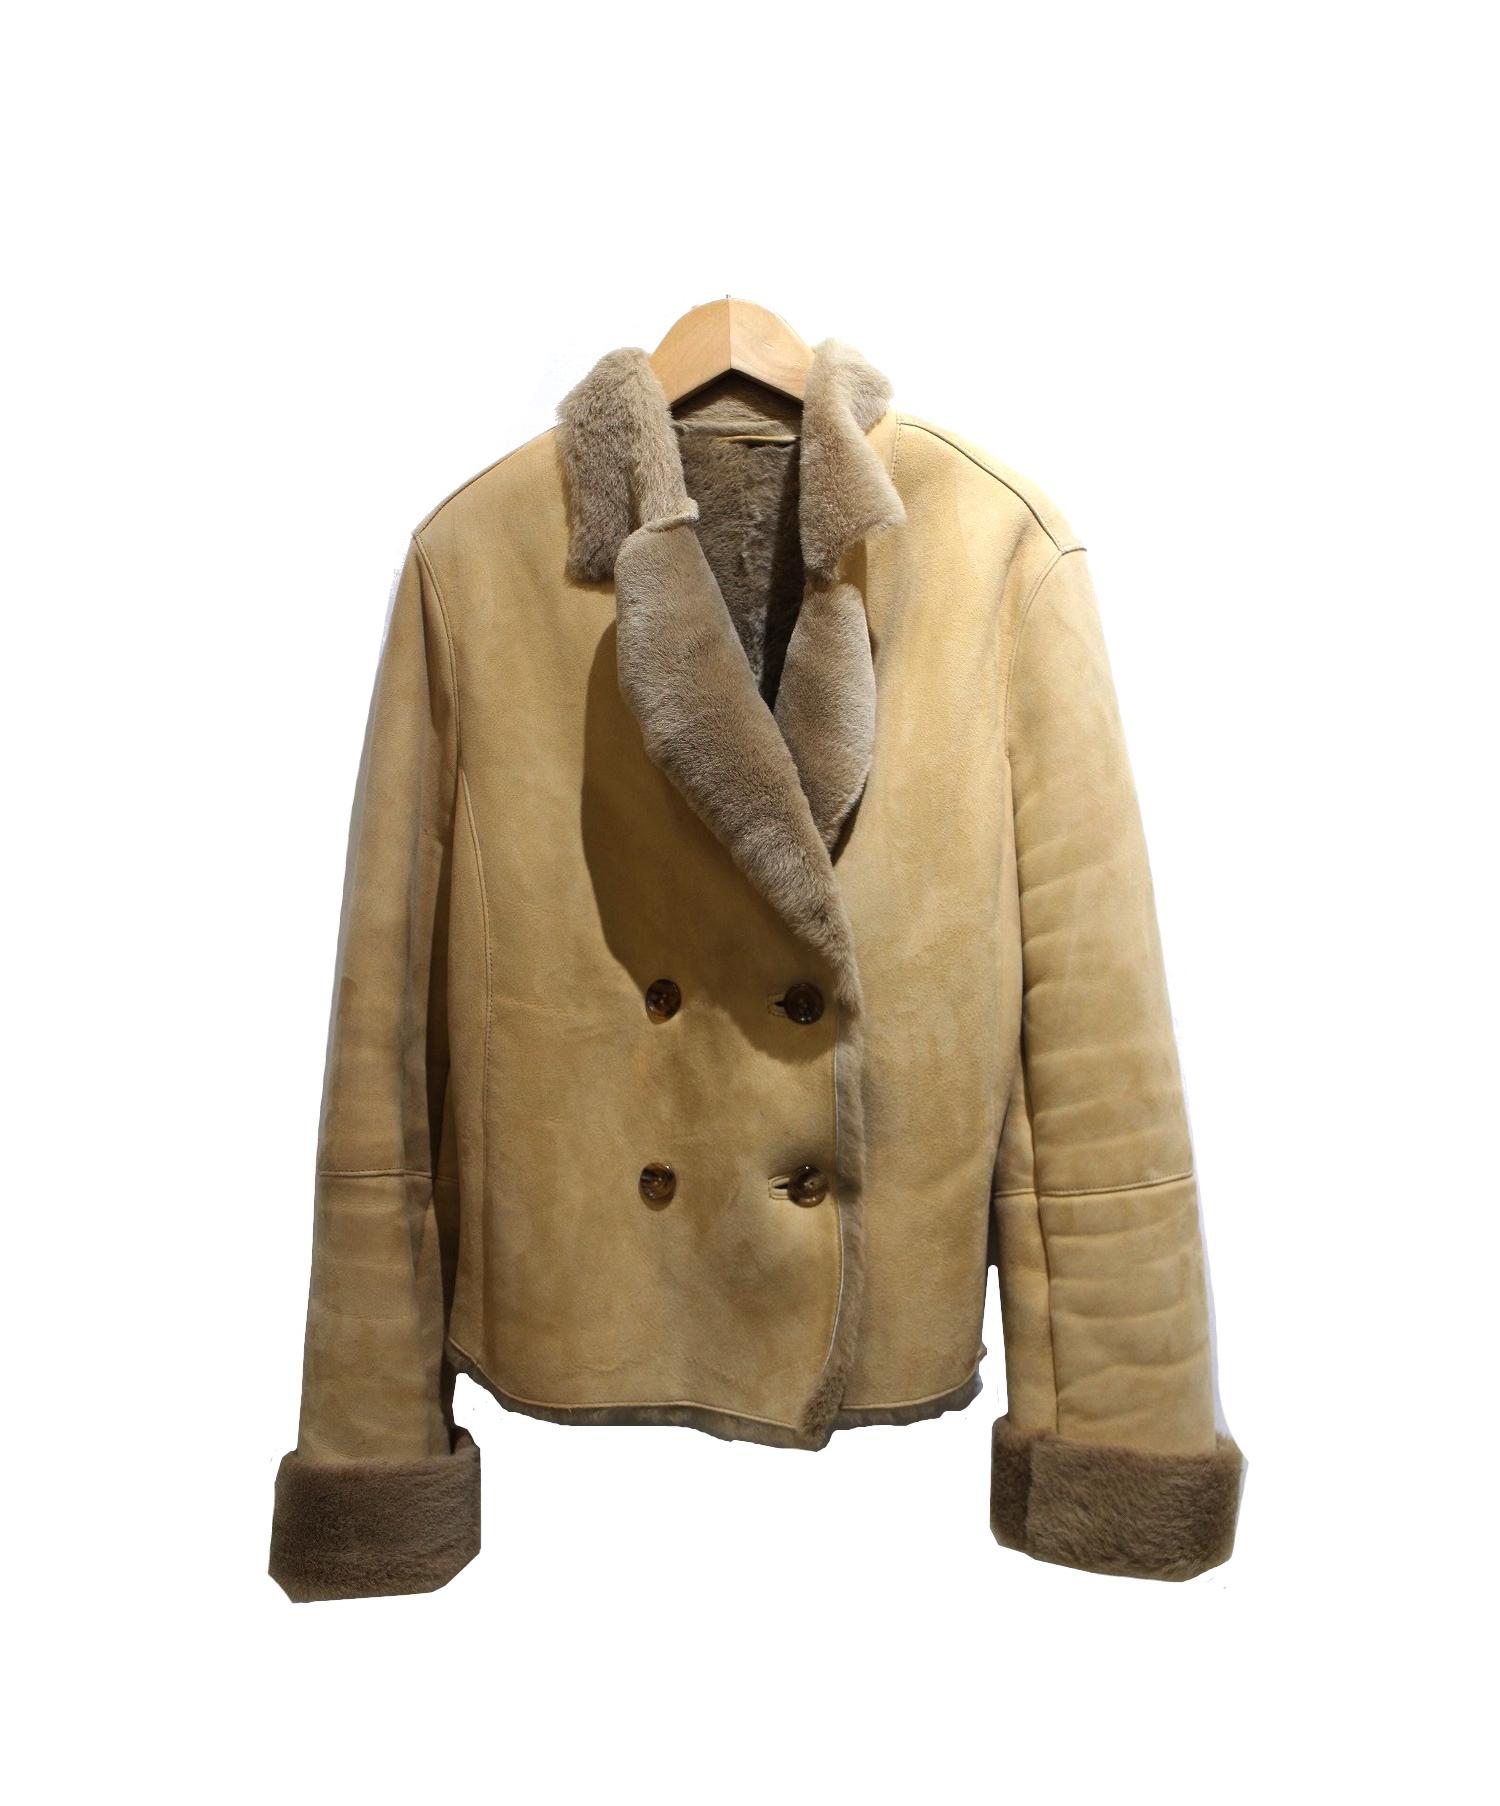 ANAYI リアルムートン 羊革 ジャケット Mサイズ 38 コート